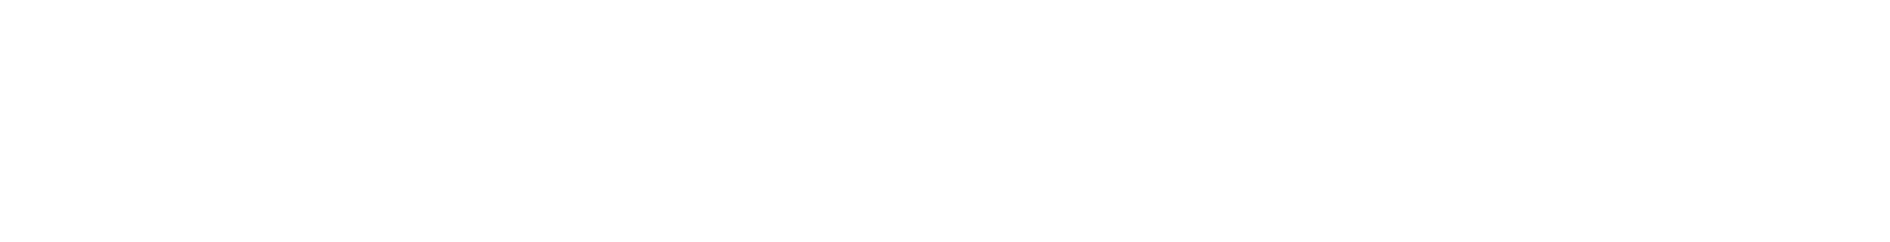 16.03.2024
Sat   20:00
Grand Auditorium